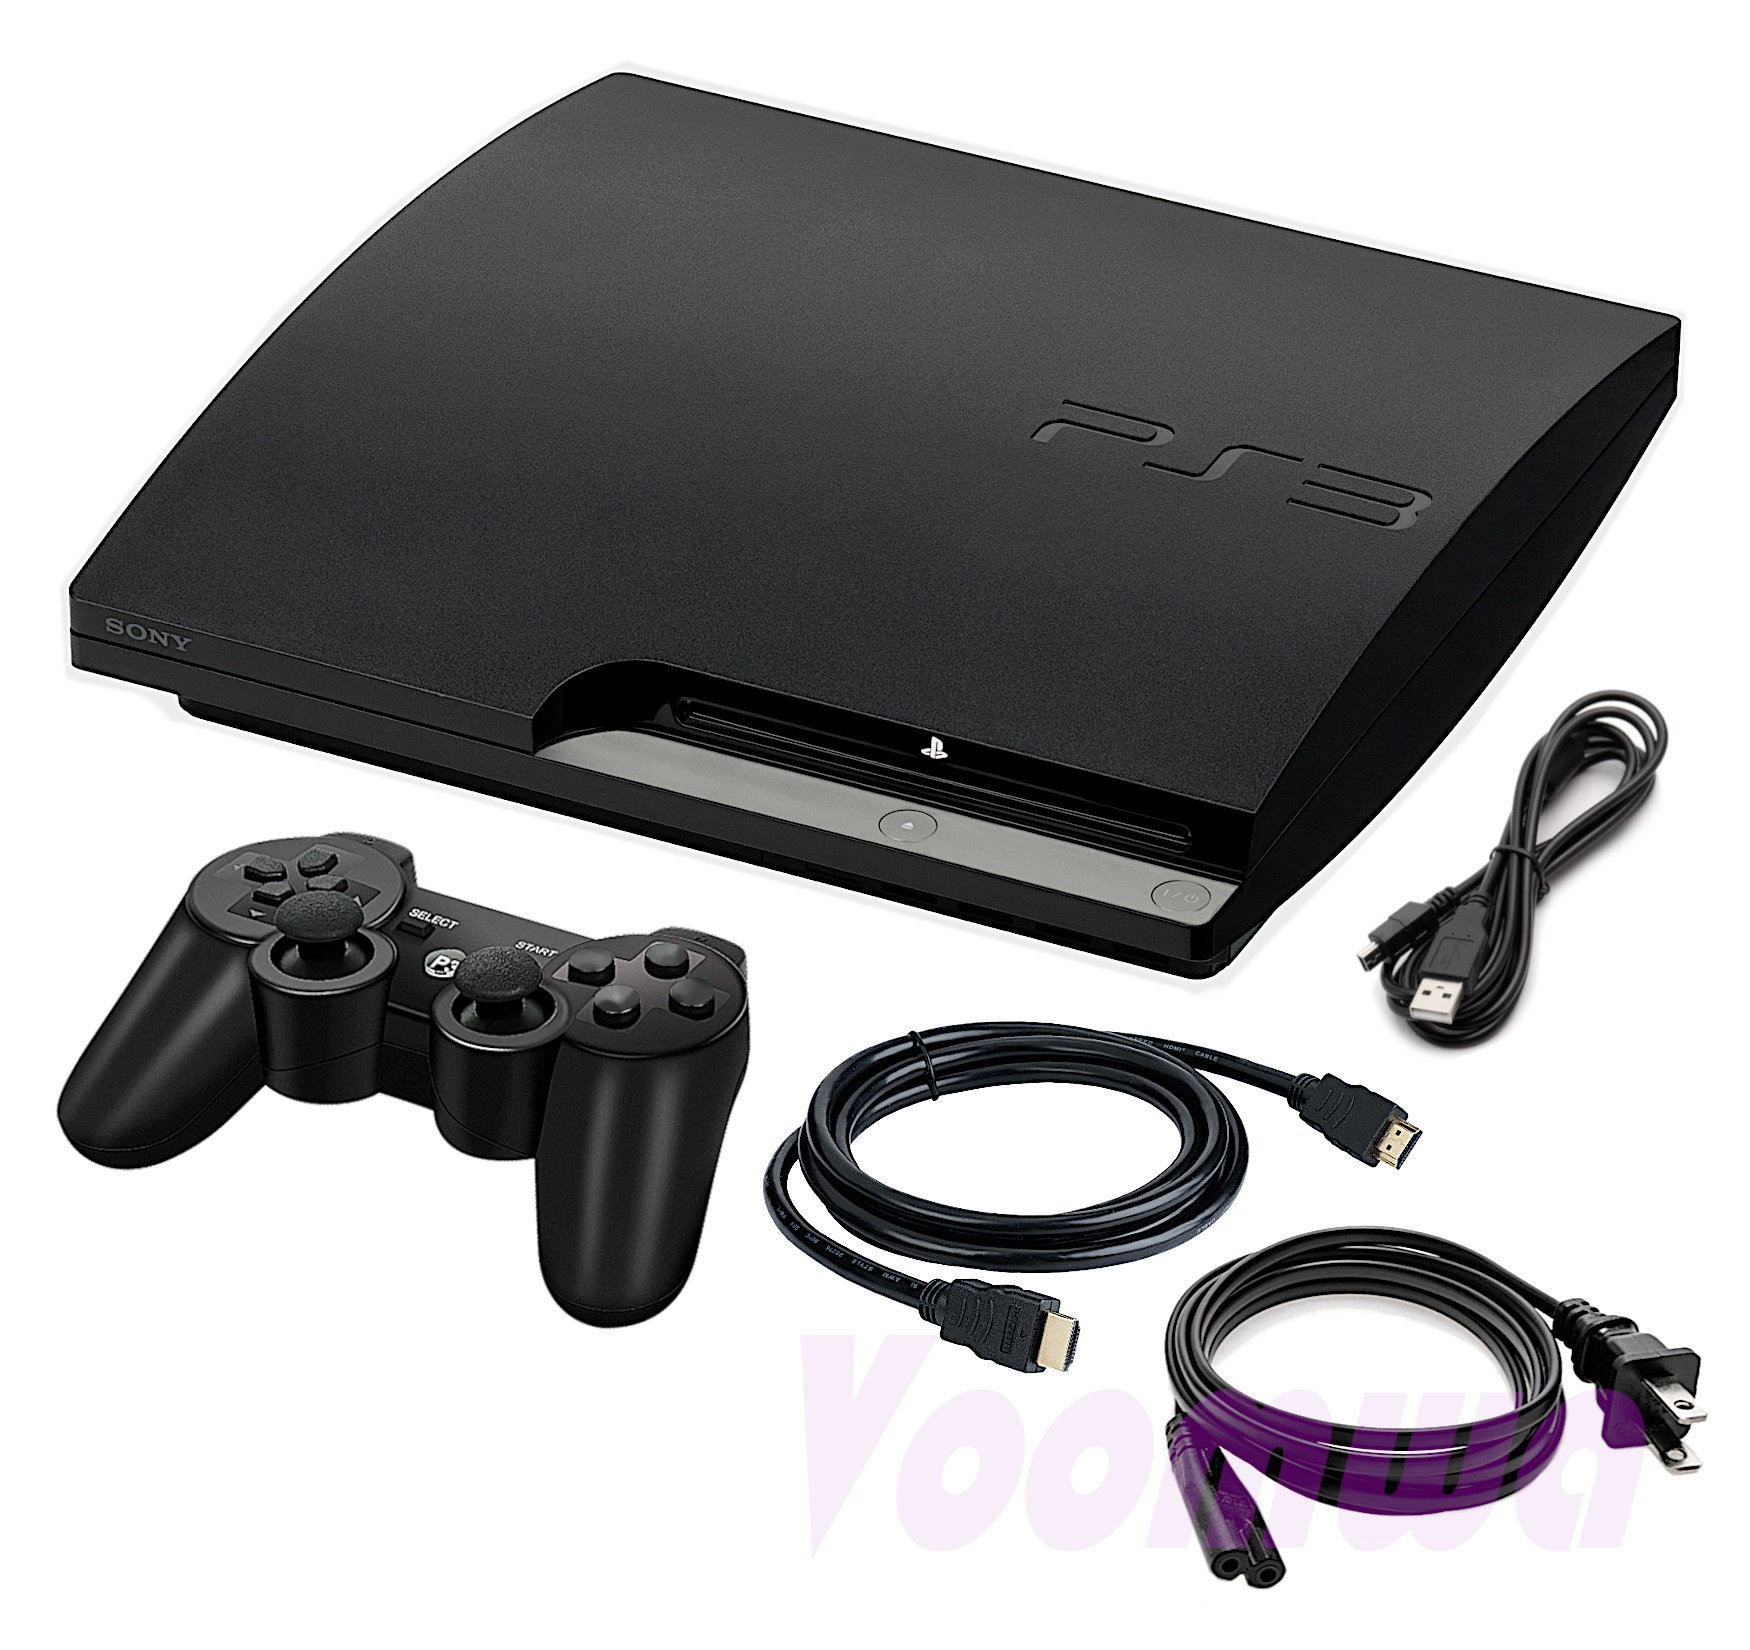 Renewed PlayStation 3 Slim Console 120GB Old Model Renewed